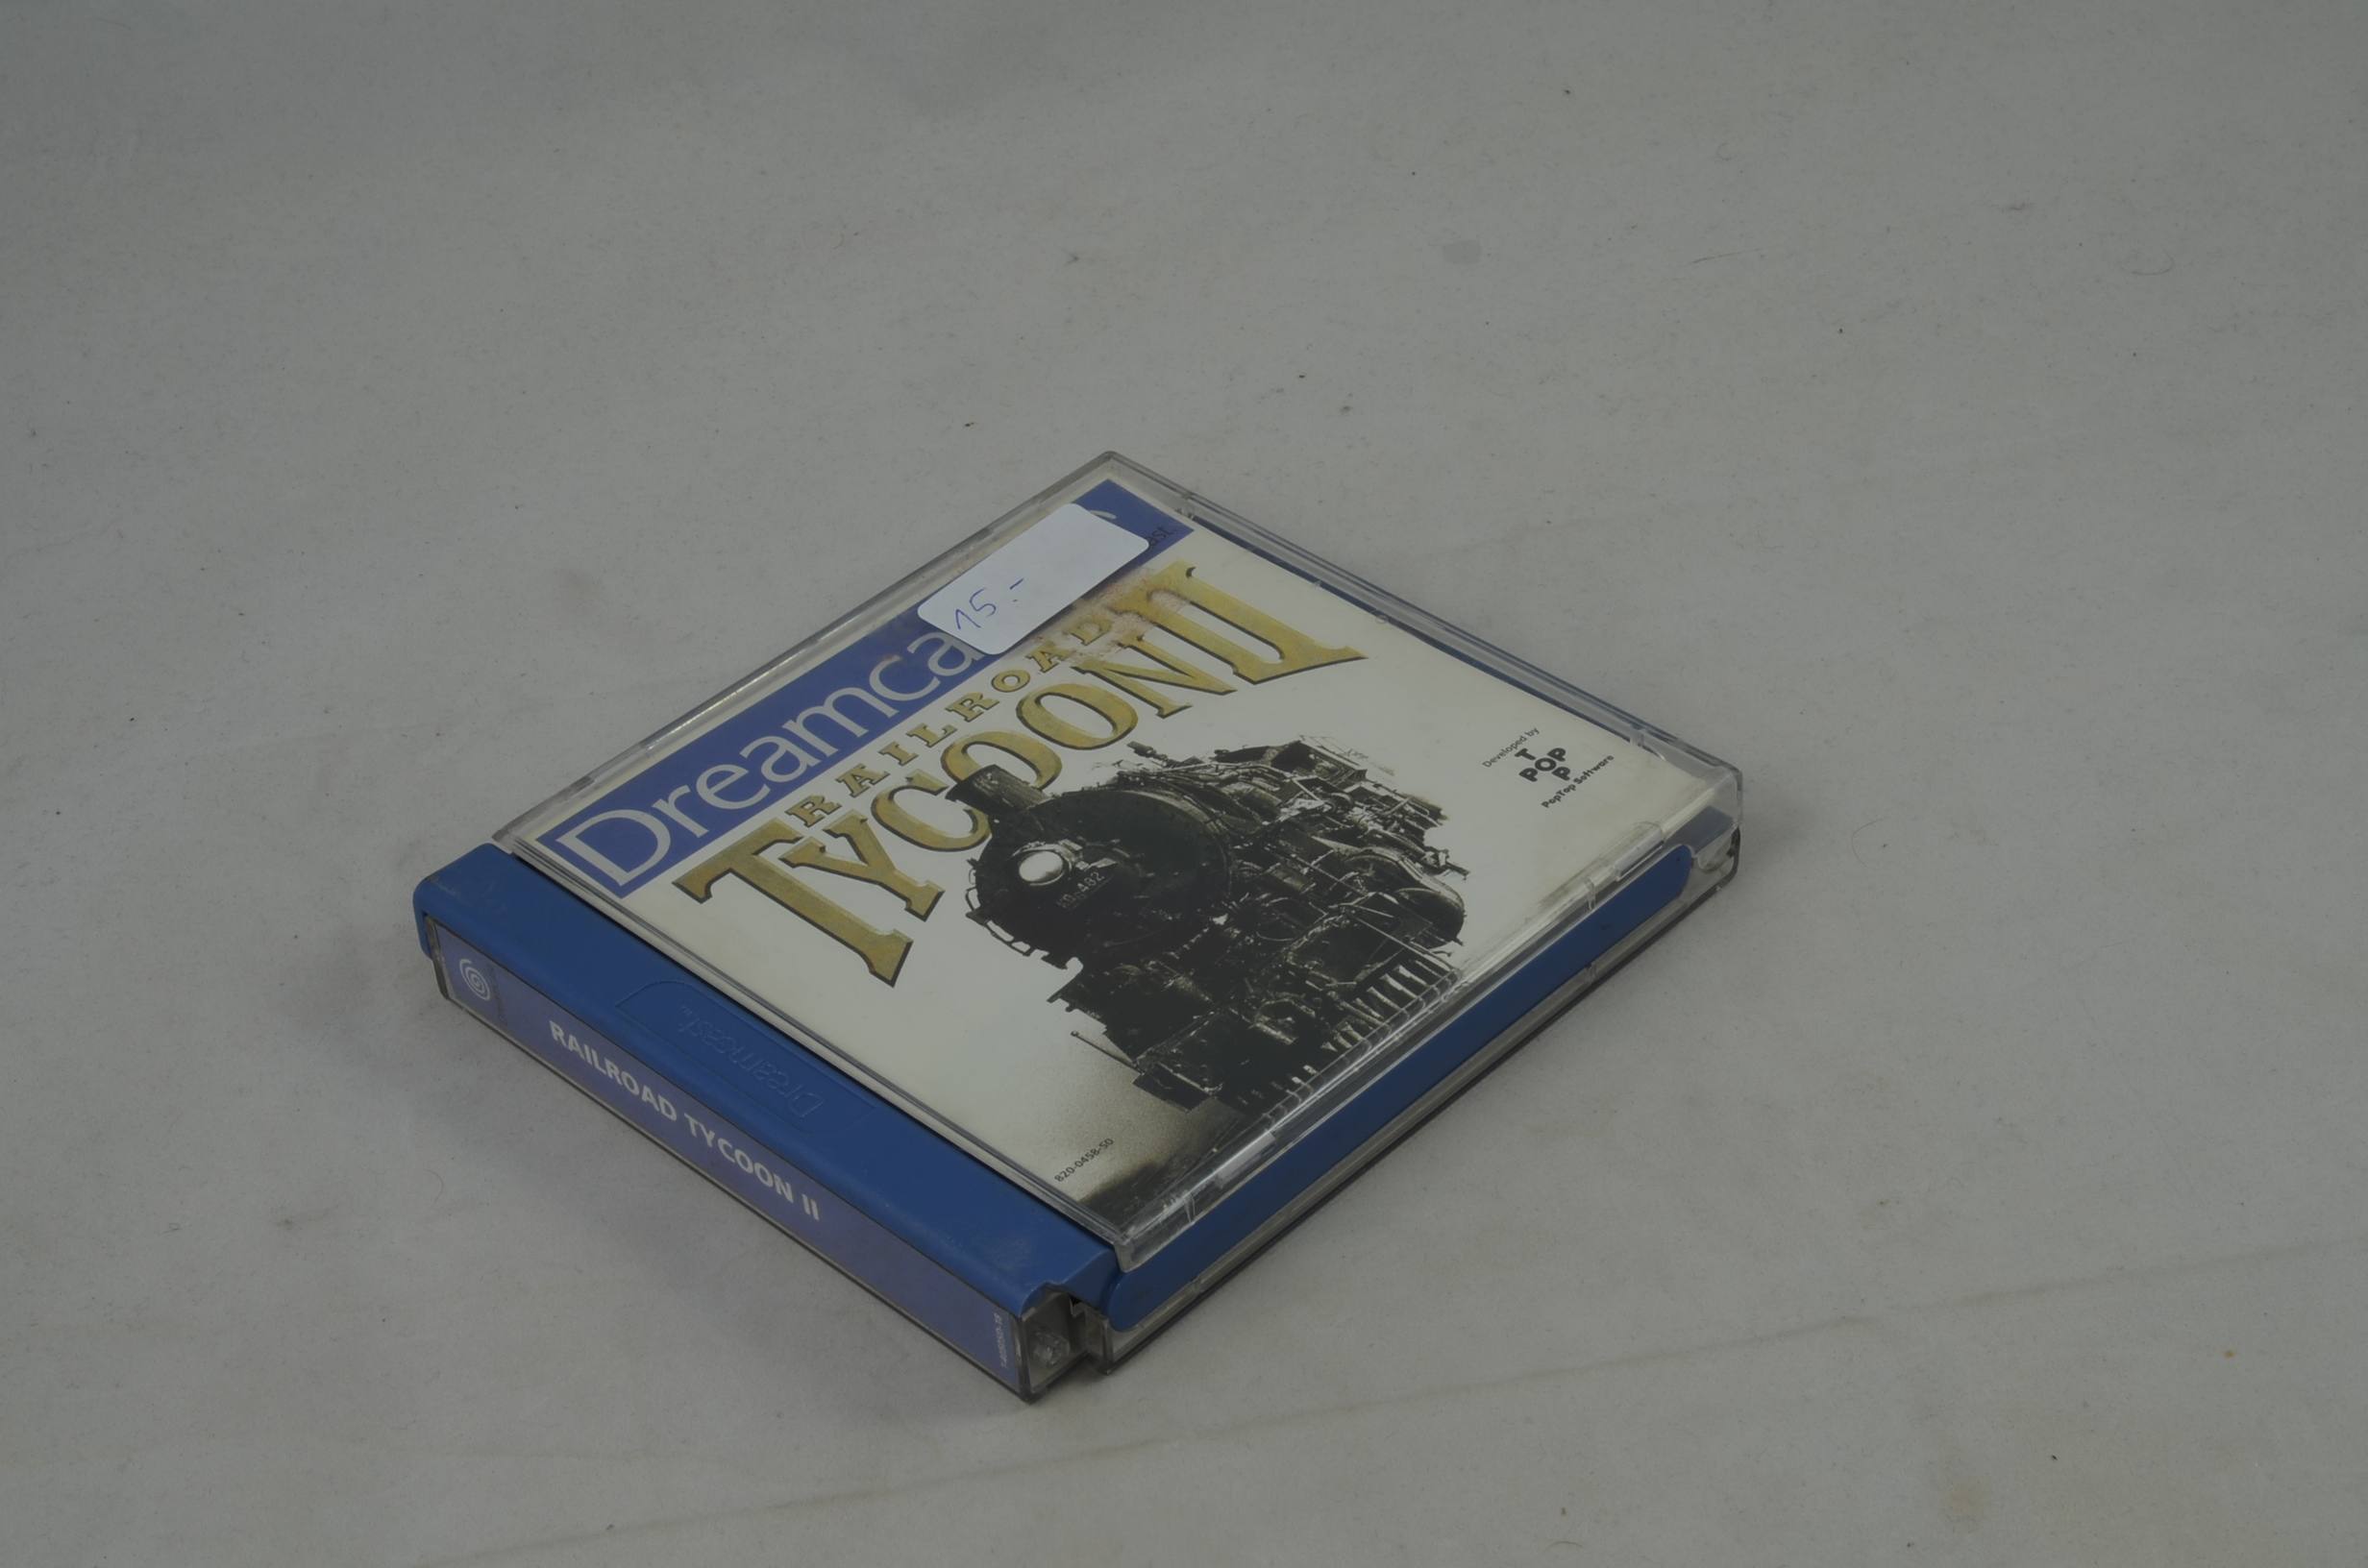 Produktbild von Railroad Tycoon II Dreamcast Spiel CIB